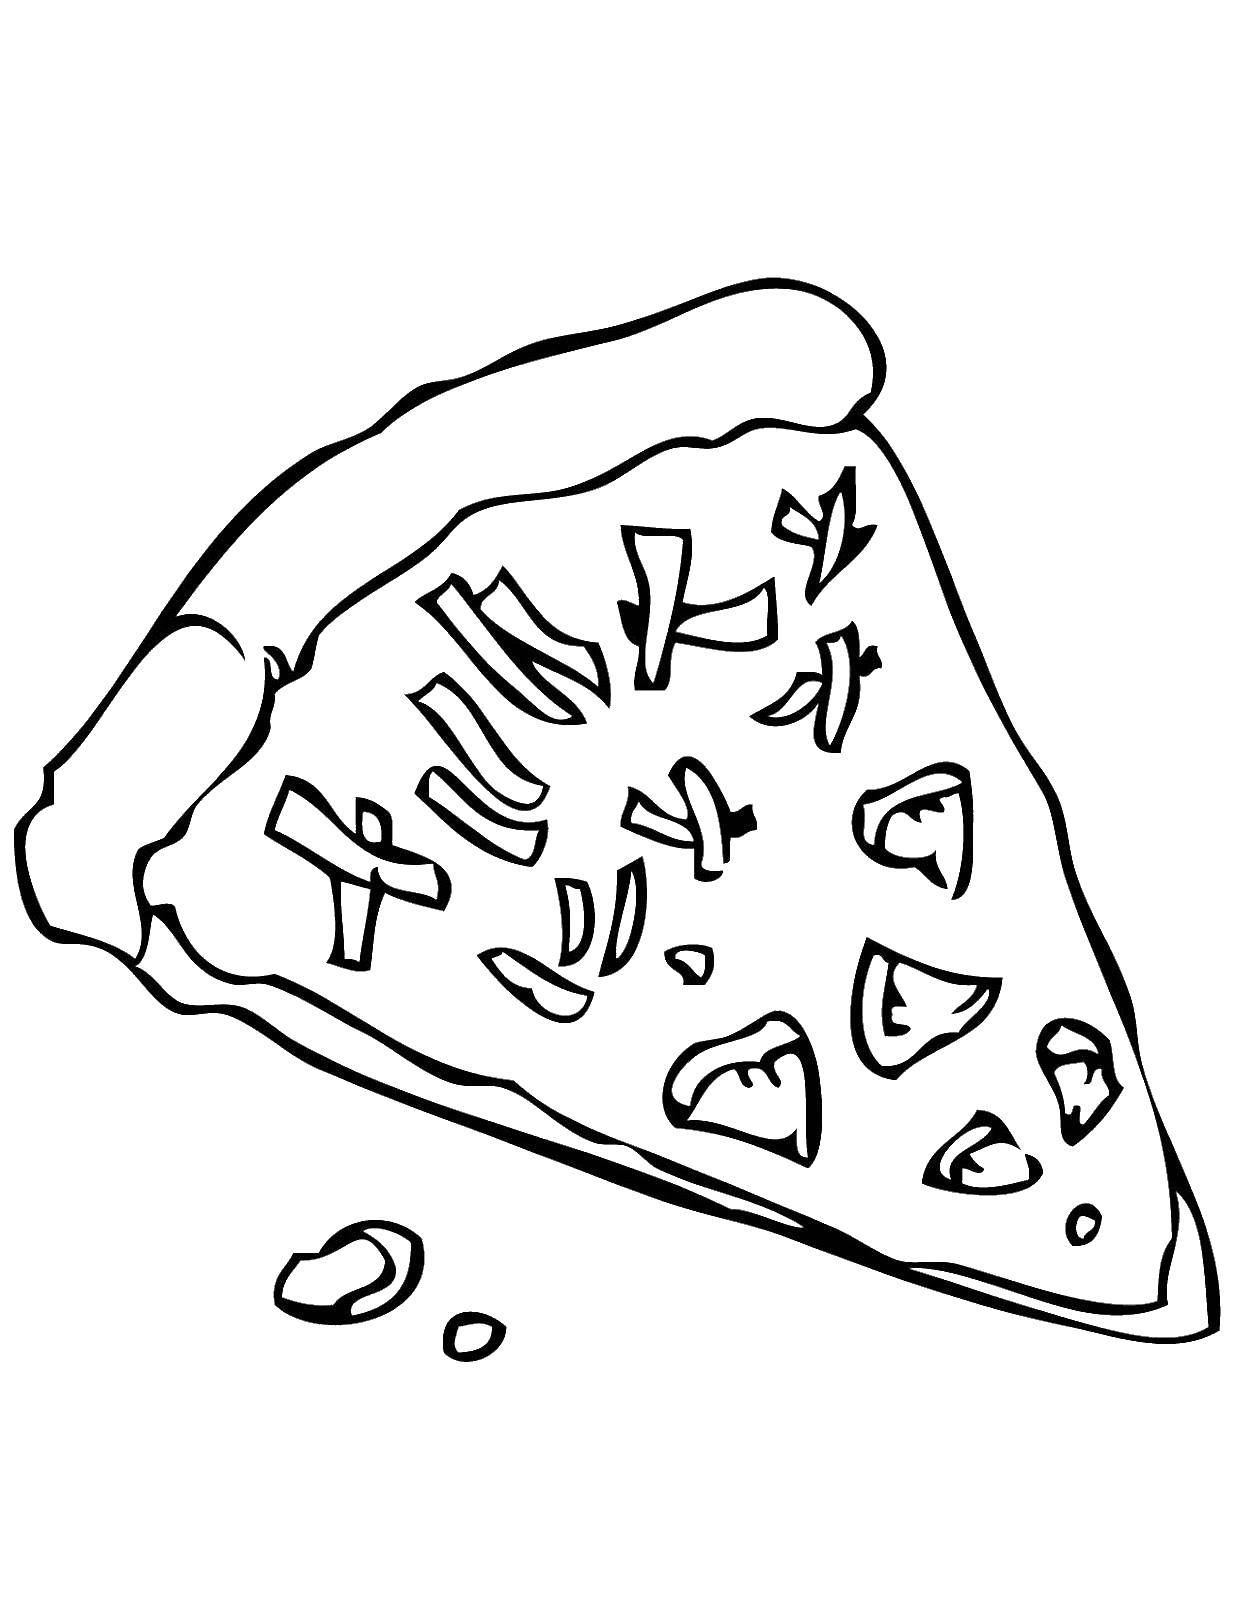 Опис: розмальовки  Шматочок піци. Категорія: Їжа. Теги:  піца, їжа.